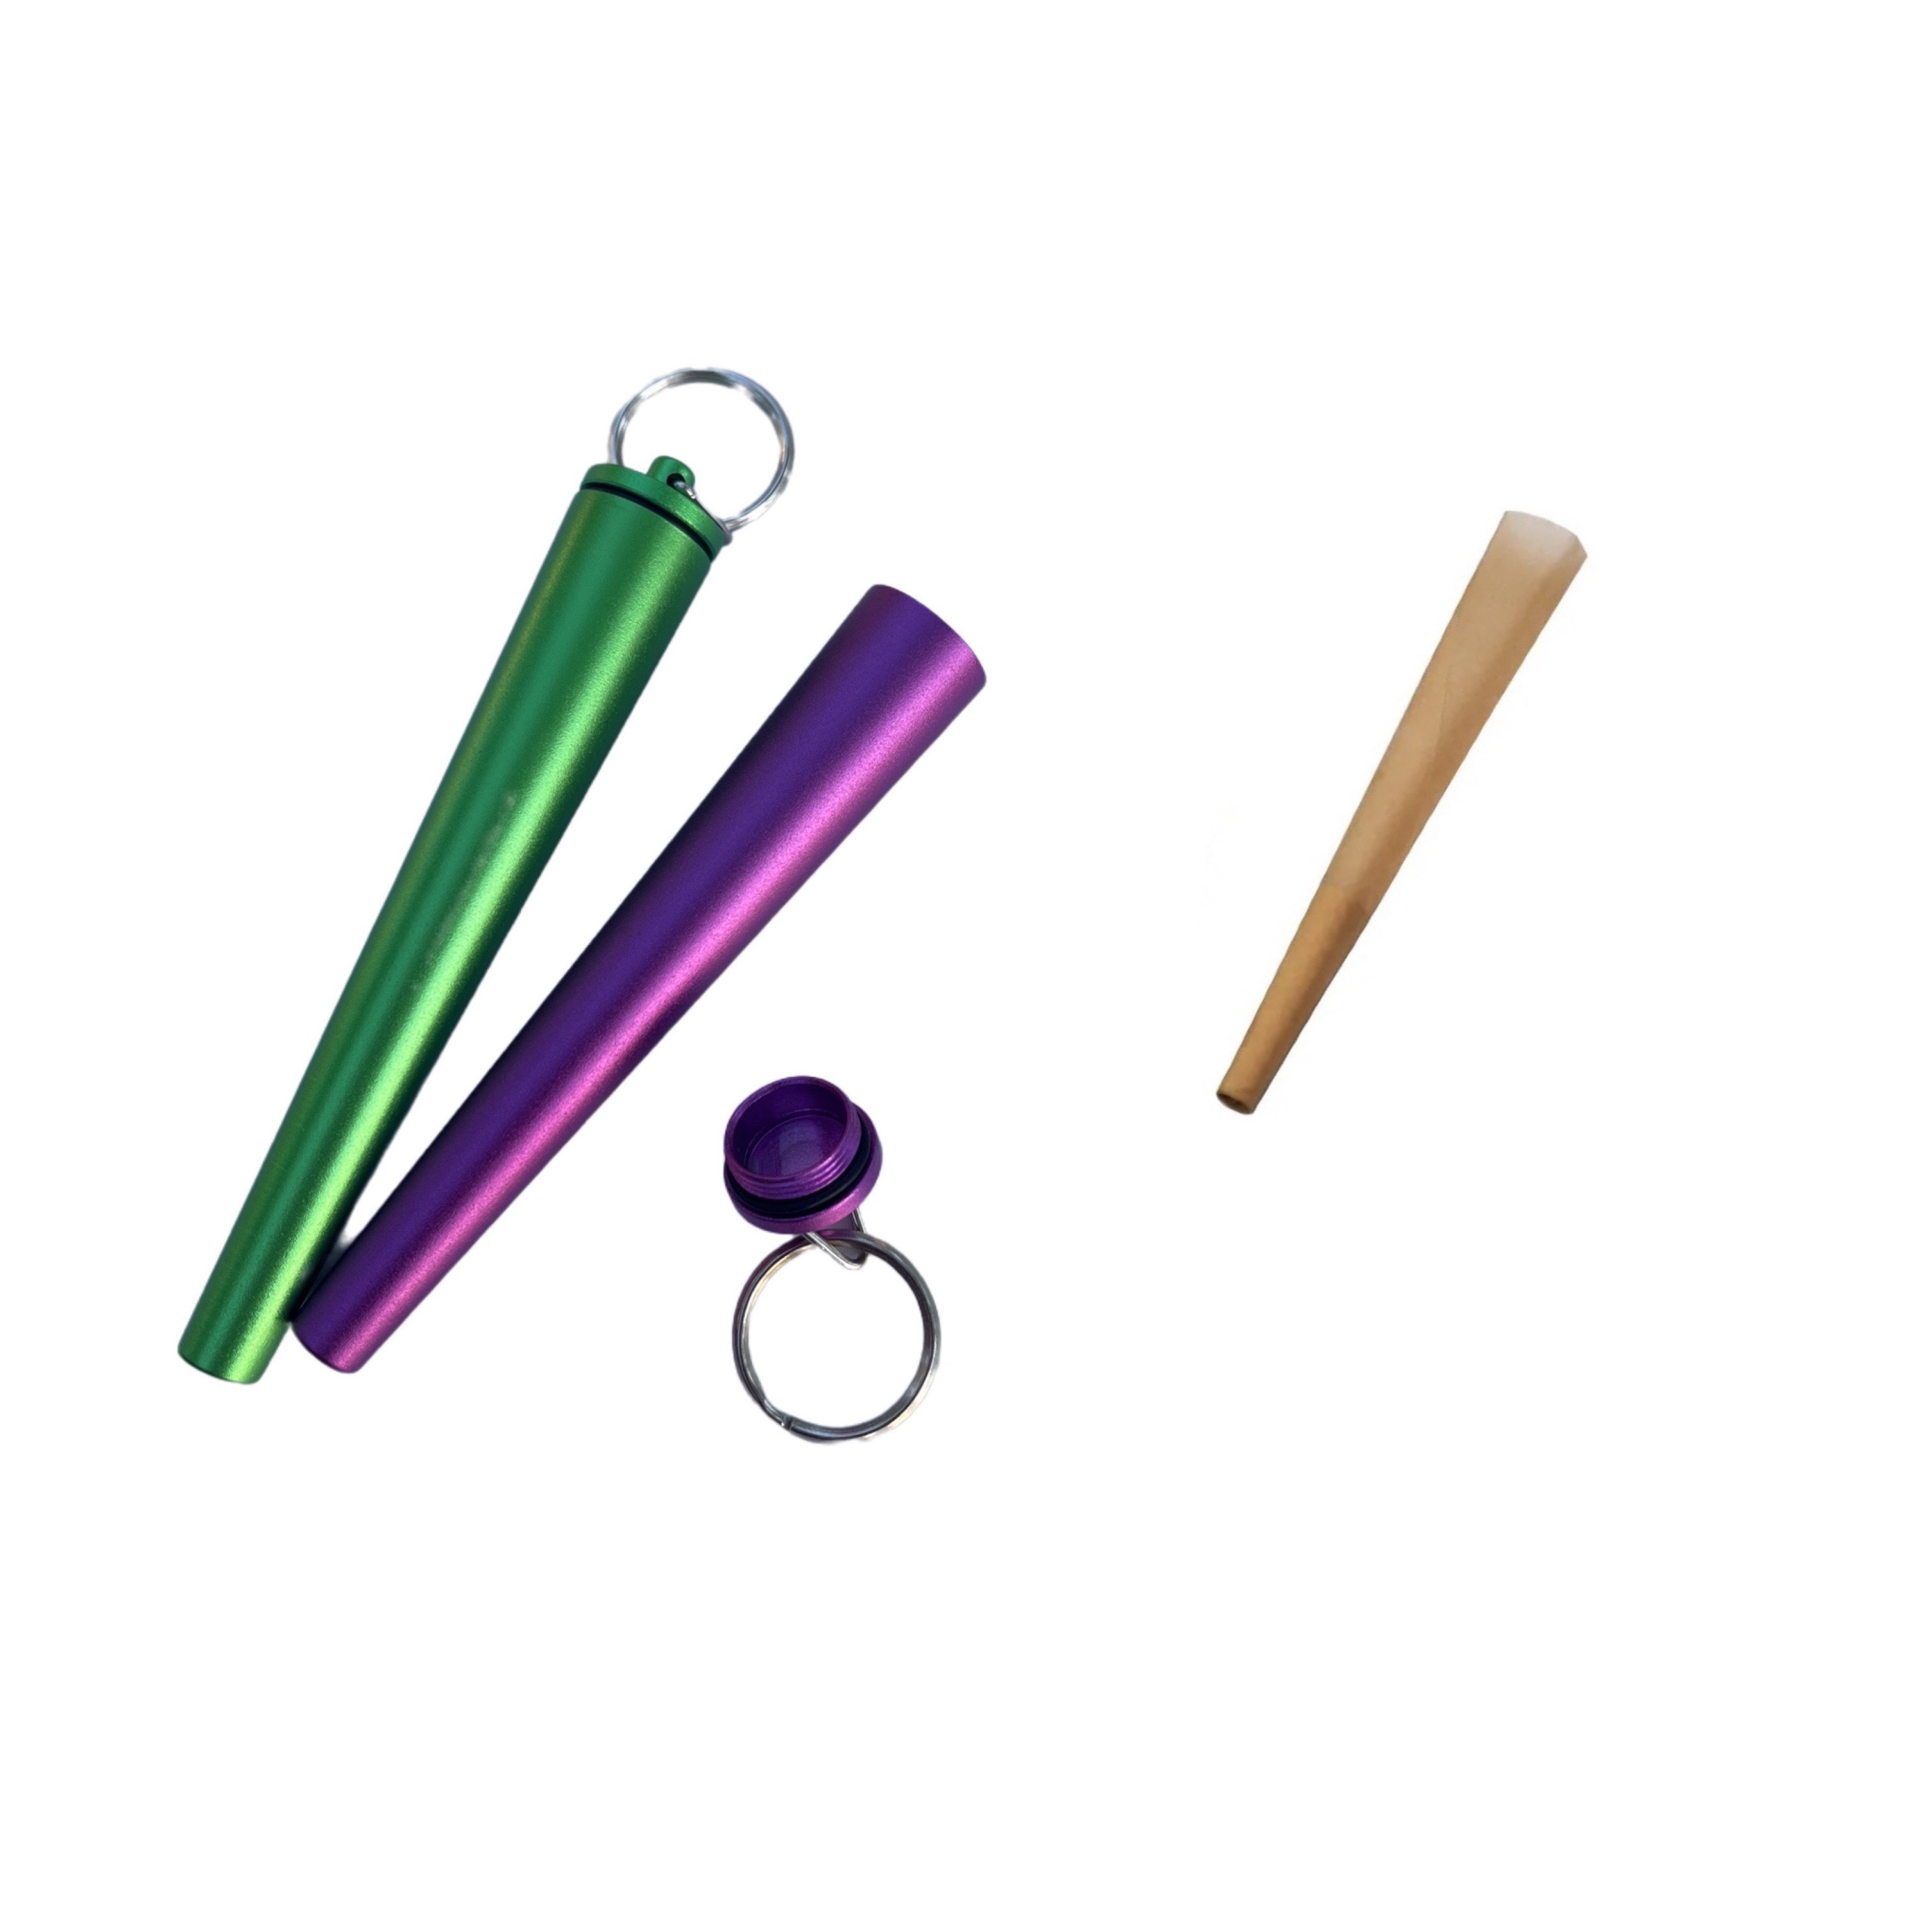 ATOMIC 4 tubi porta cono, cone joint tube, 4 custodie per Sigarette  coniche, trasparente in plastica, colori assortiti